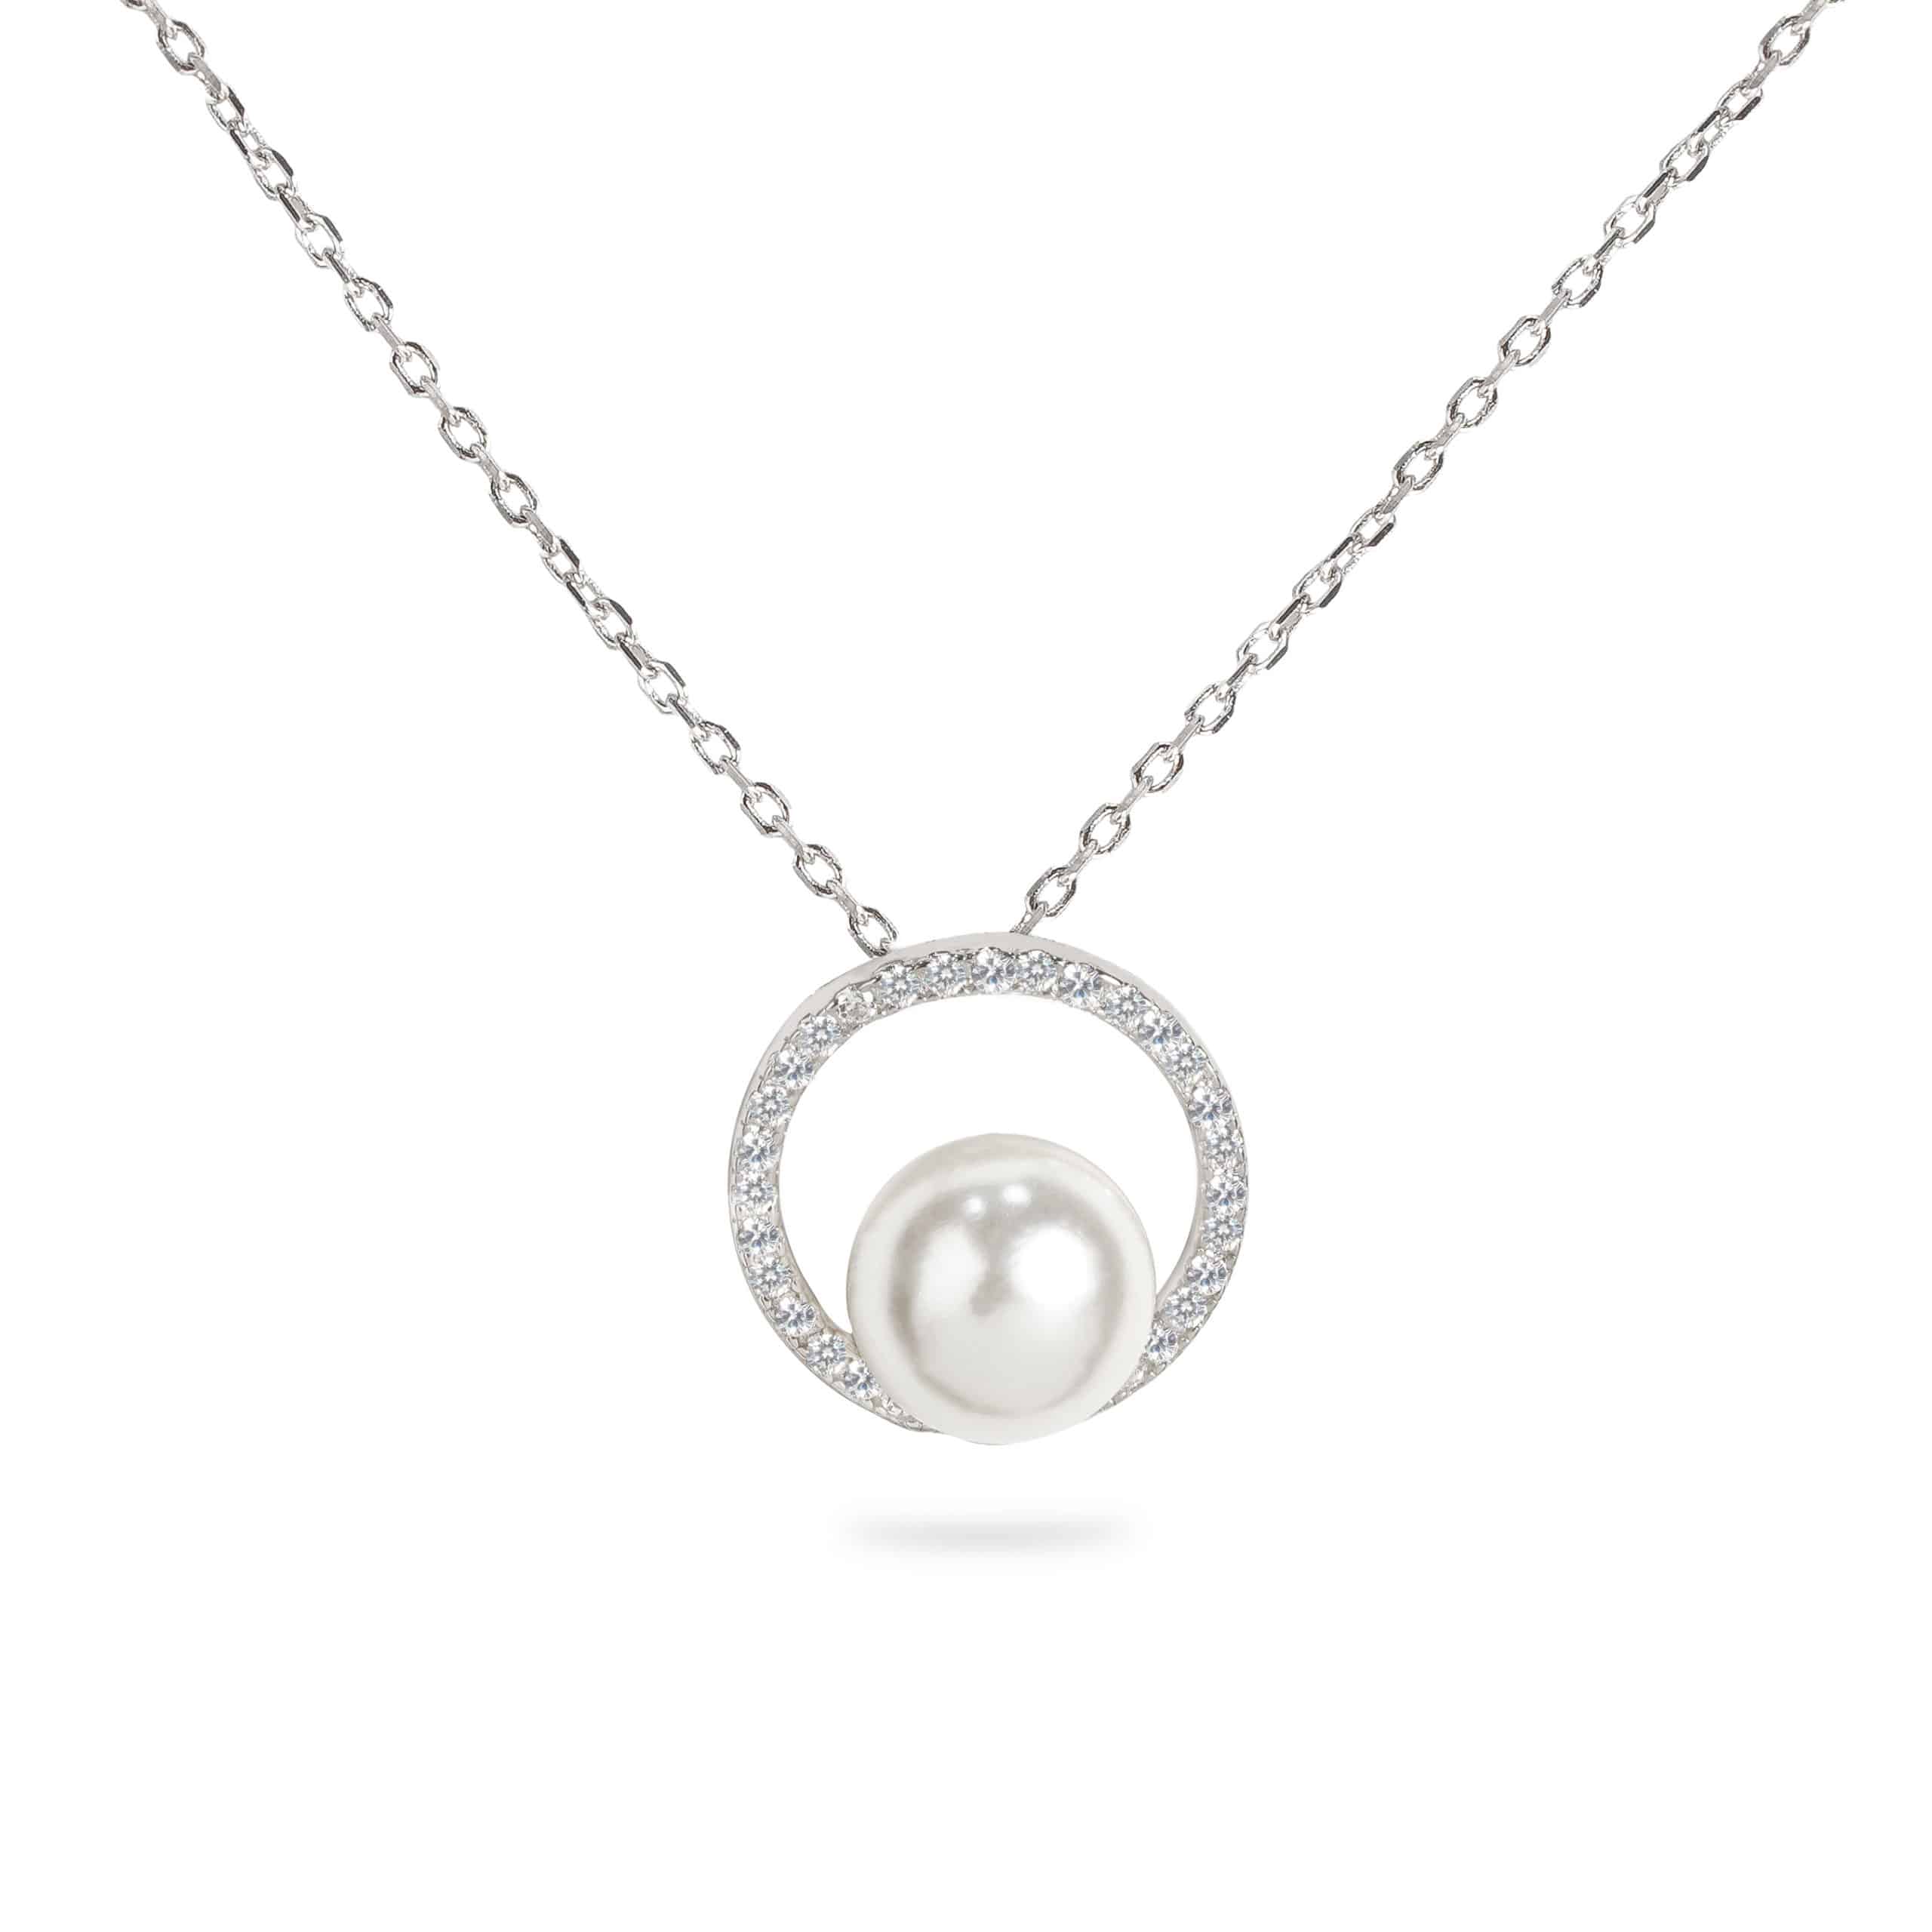 Arabella Necklace (925 Sterling Silver) - Dear Me Jewelry